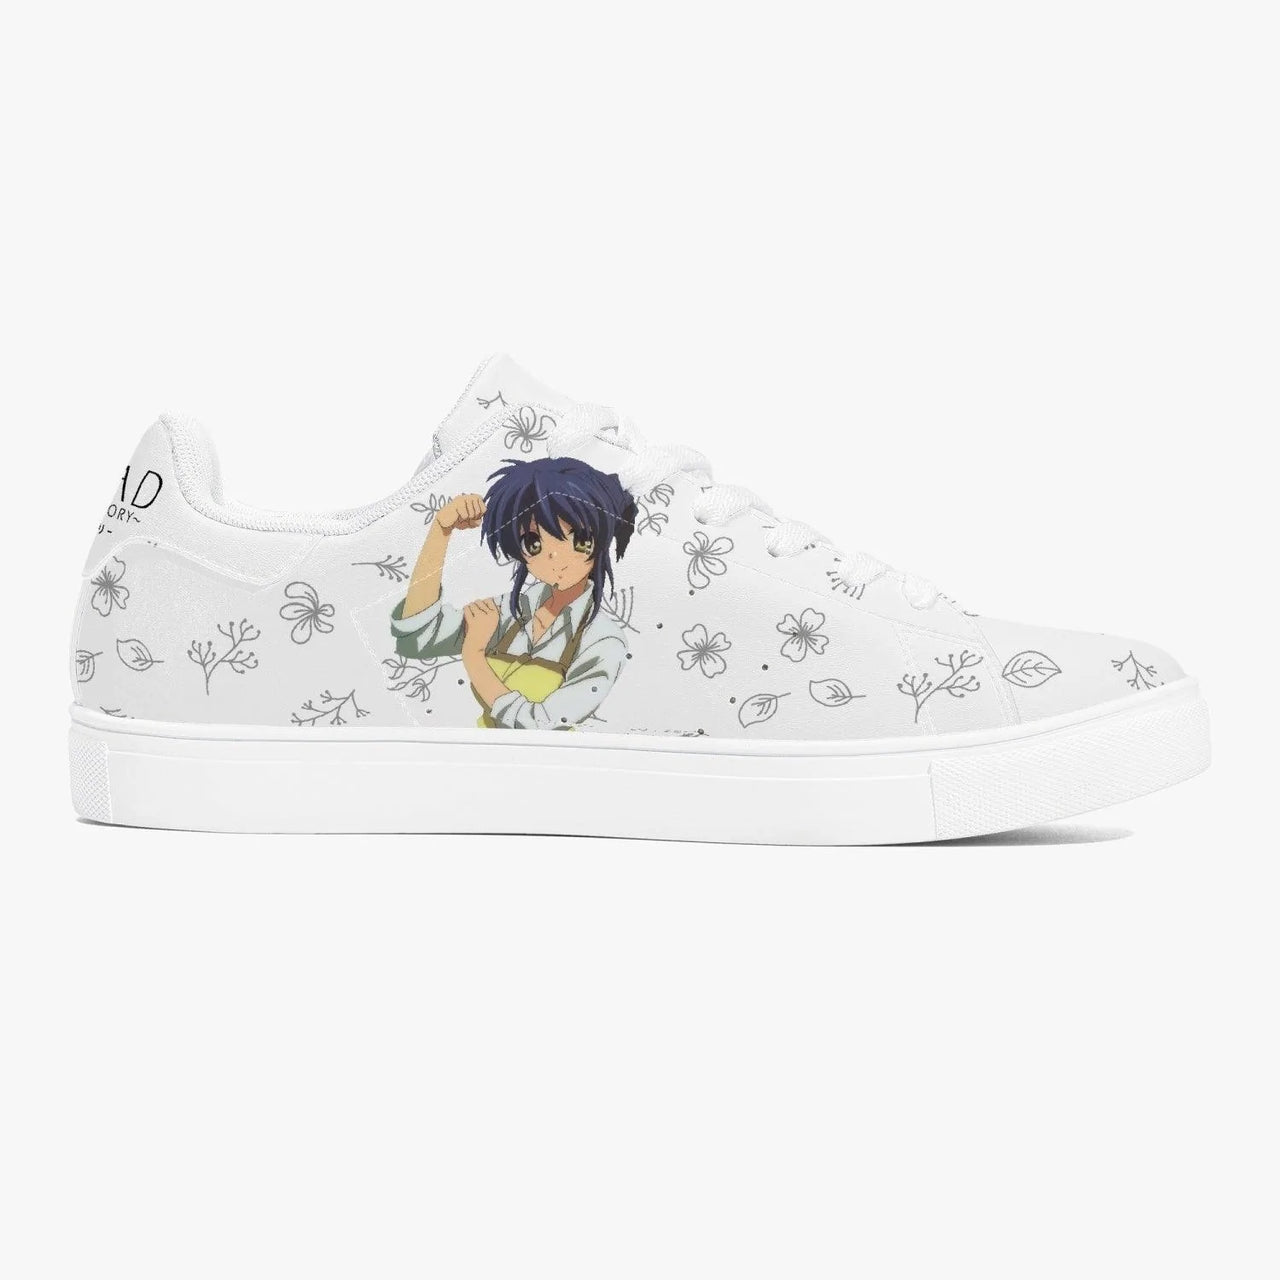 Clannad Misae Sagara Skate Anime Shoes _ Clannad _ Ayuko